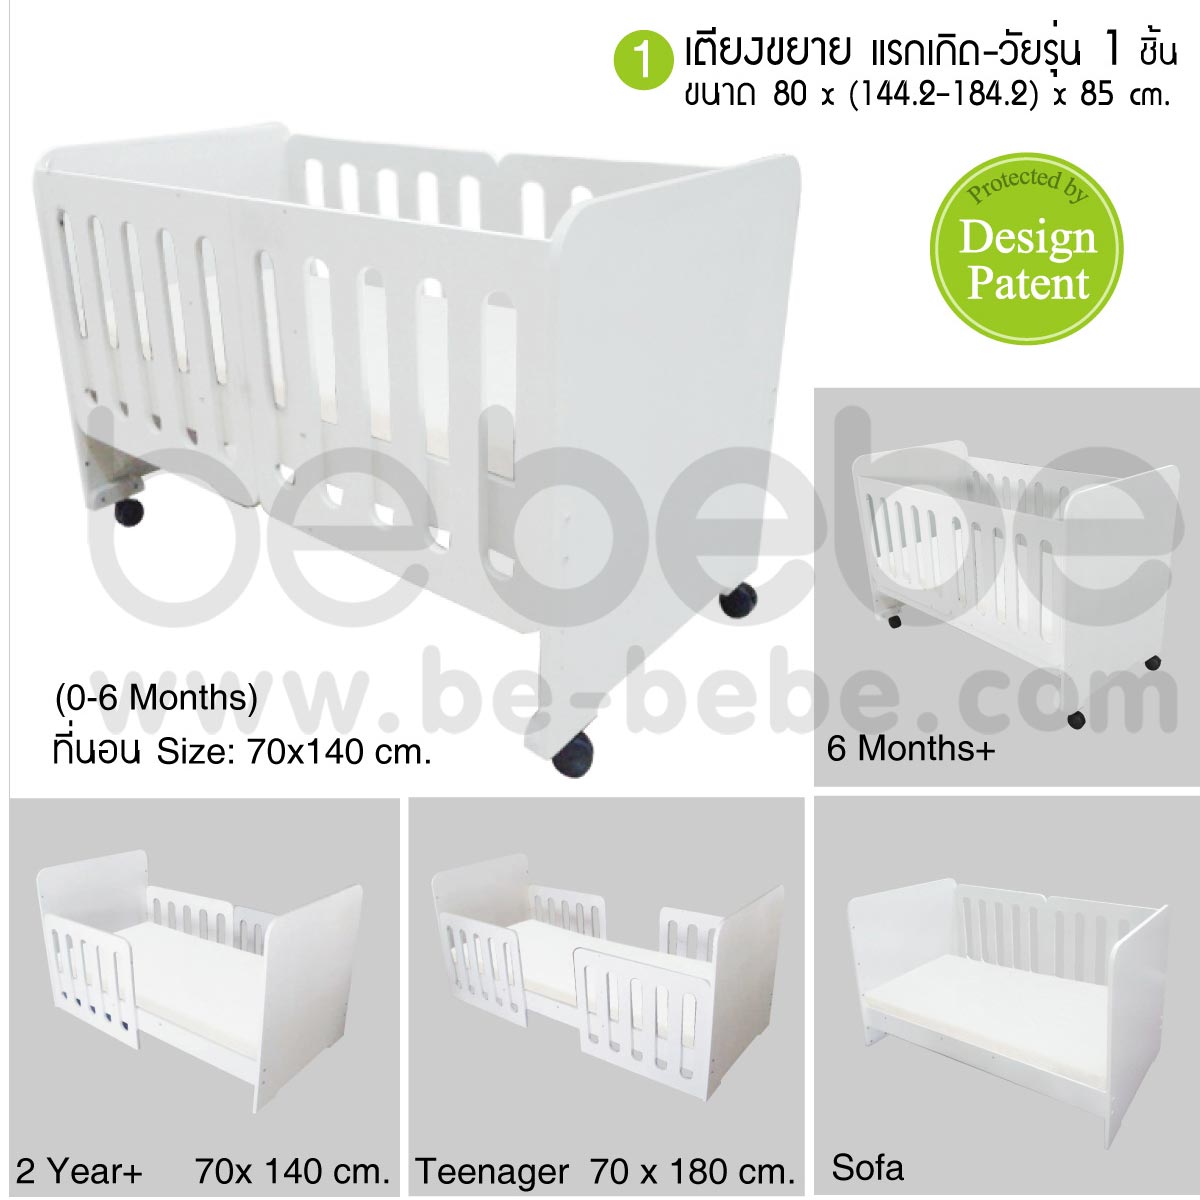 be bebe :ชุดเตียงเด็กแรกเกิด-วัยรุ่นขยายความยาวและปรับเป็นโซฟาได้+ที่นอนฟองน้ำ+ชุดเครื่องนอน+ตู้เสื้อผ้า+ตู้เตี้ย (70x140/180) /ขาว